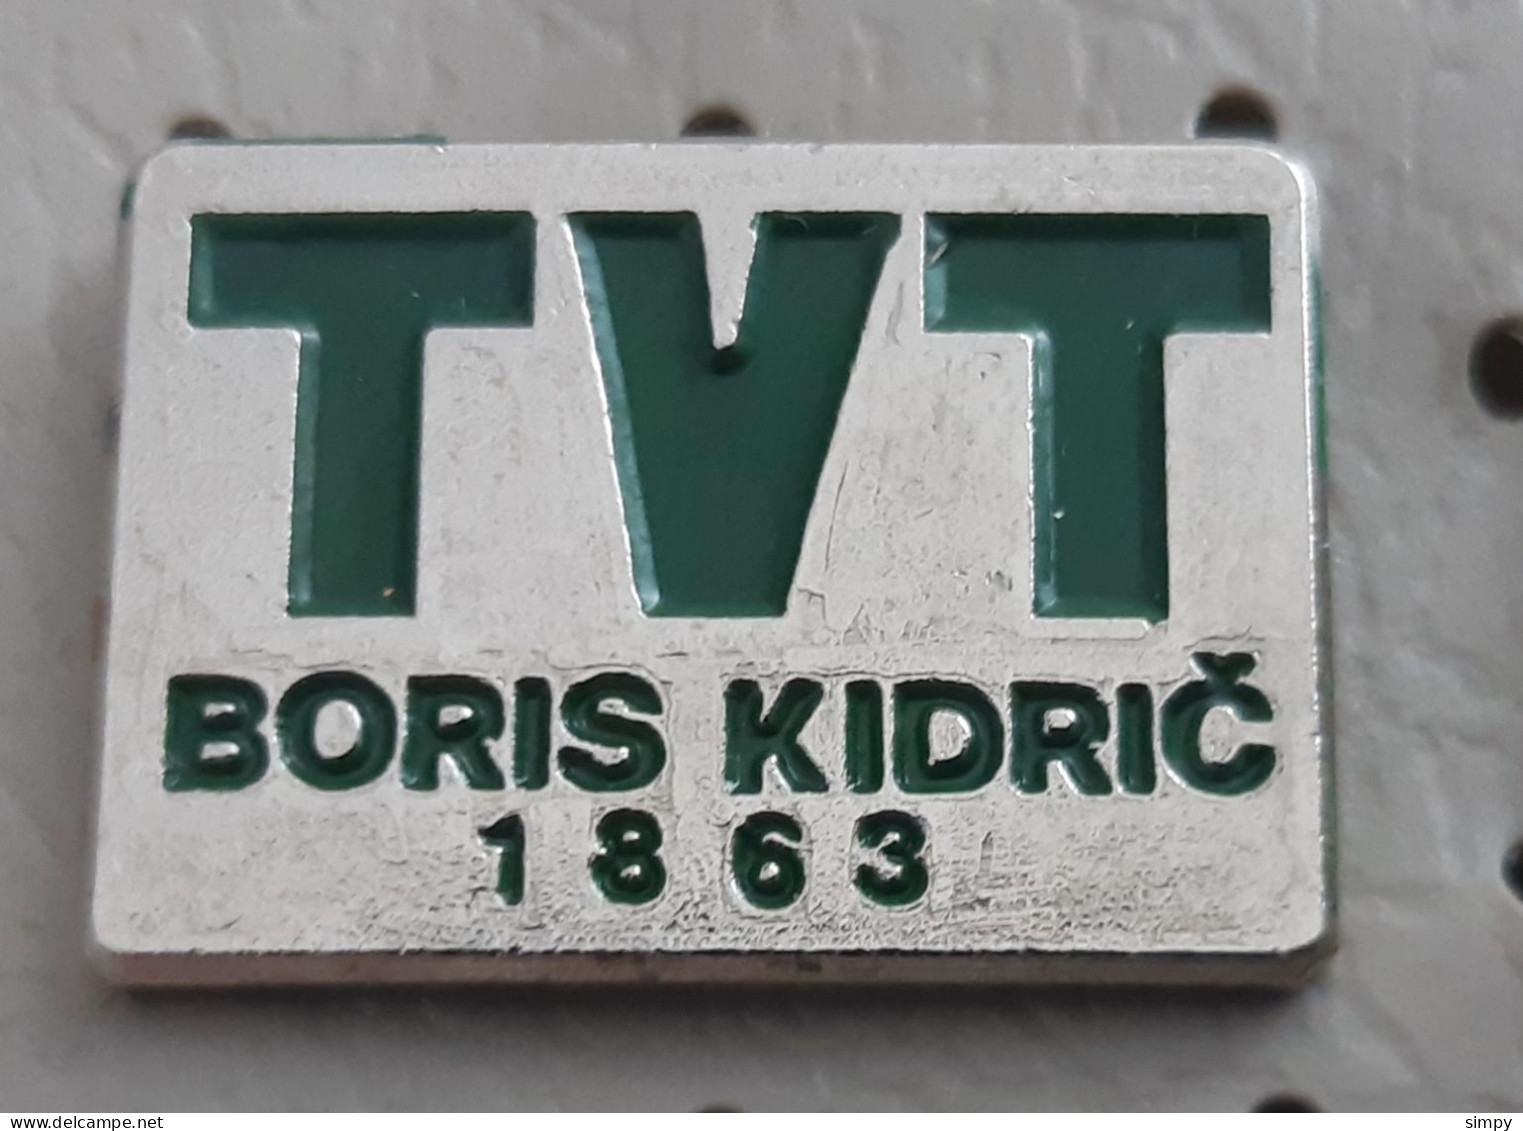 TVT Boris Kidric Maribor 1863 Locomotive Train Industry Slovenia Ex Yugoslavia Pin - Transport